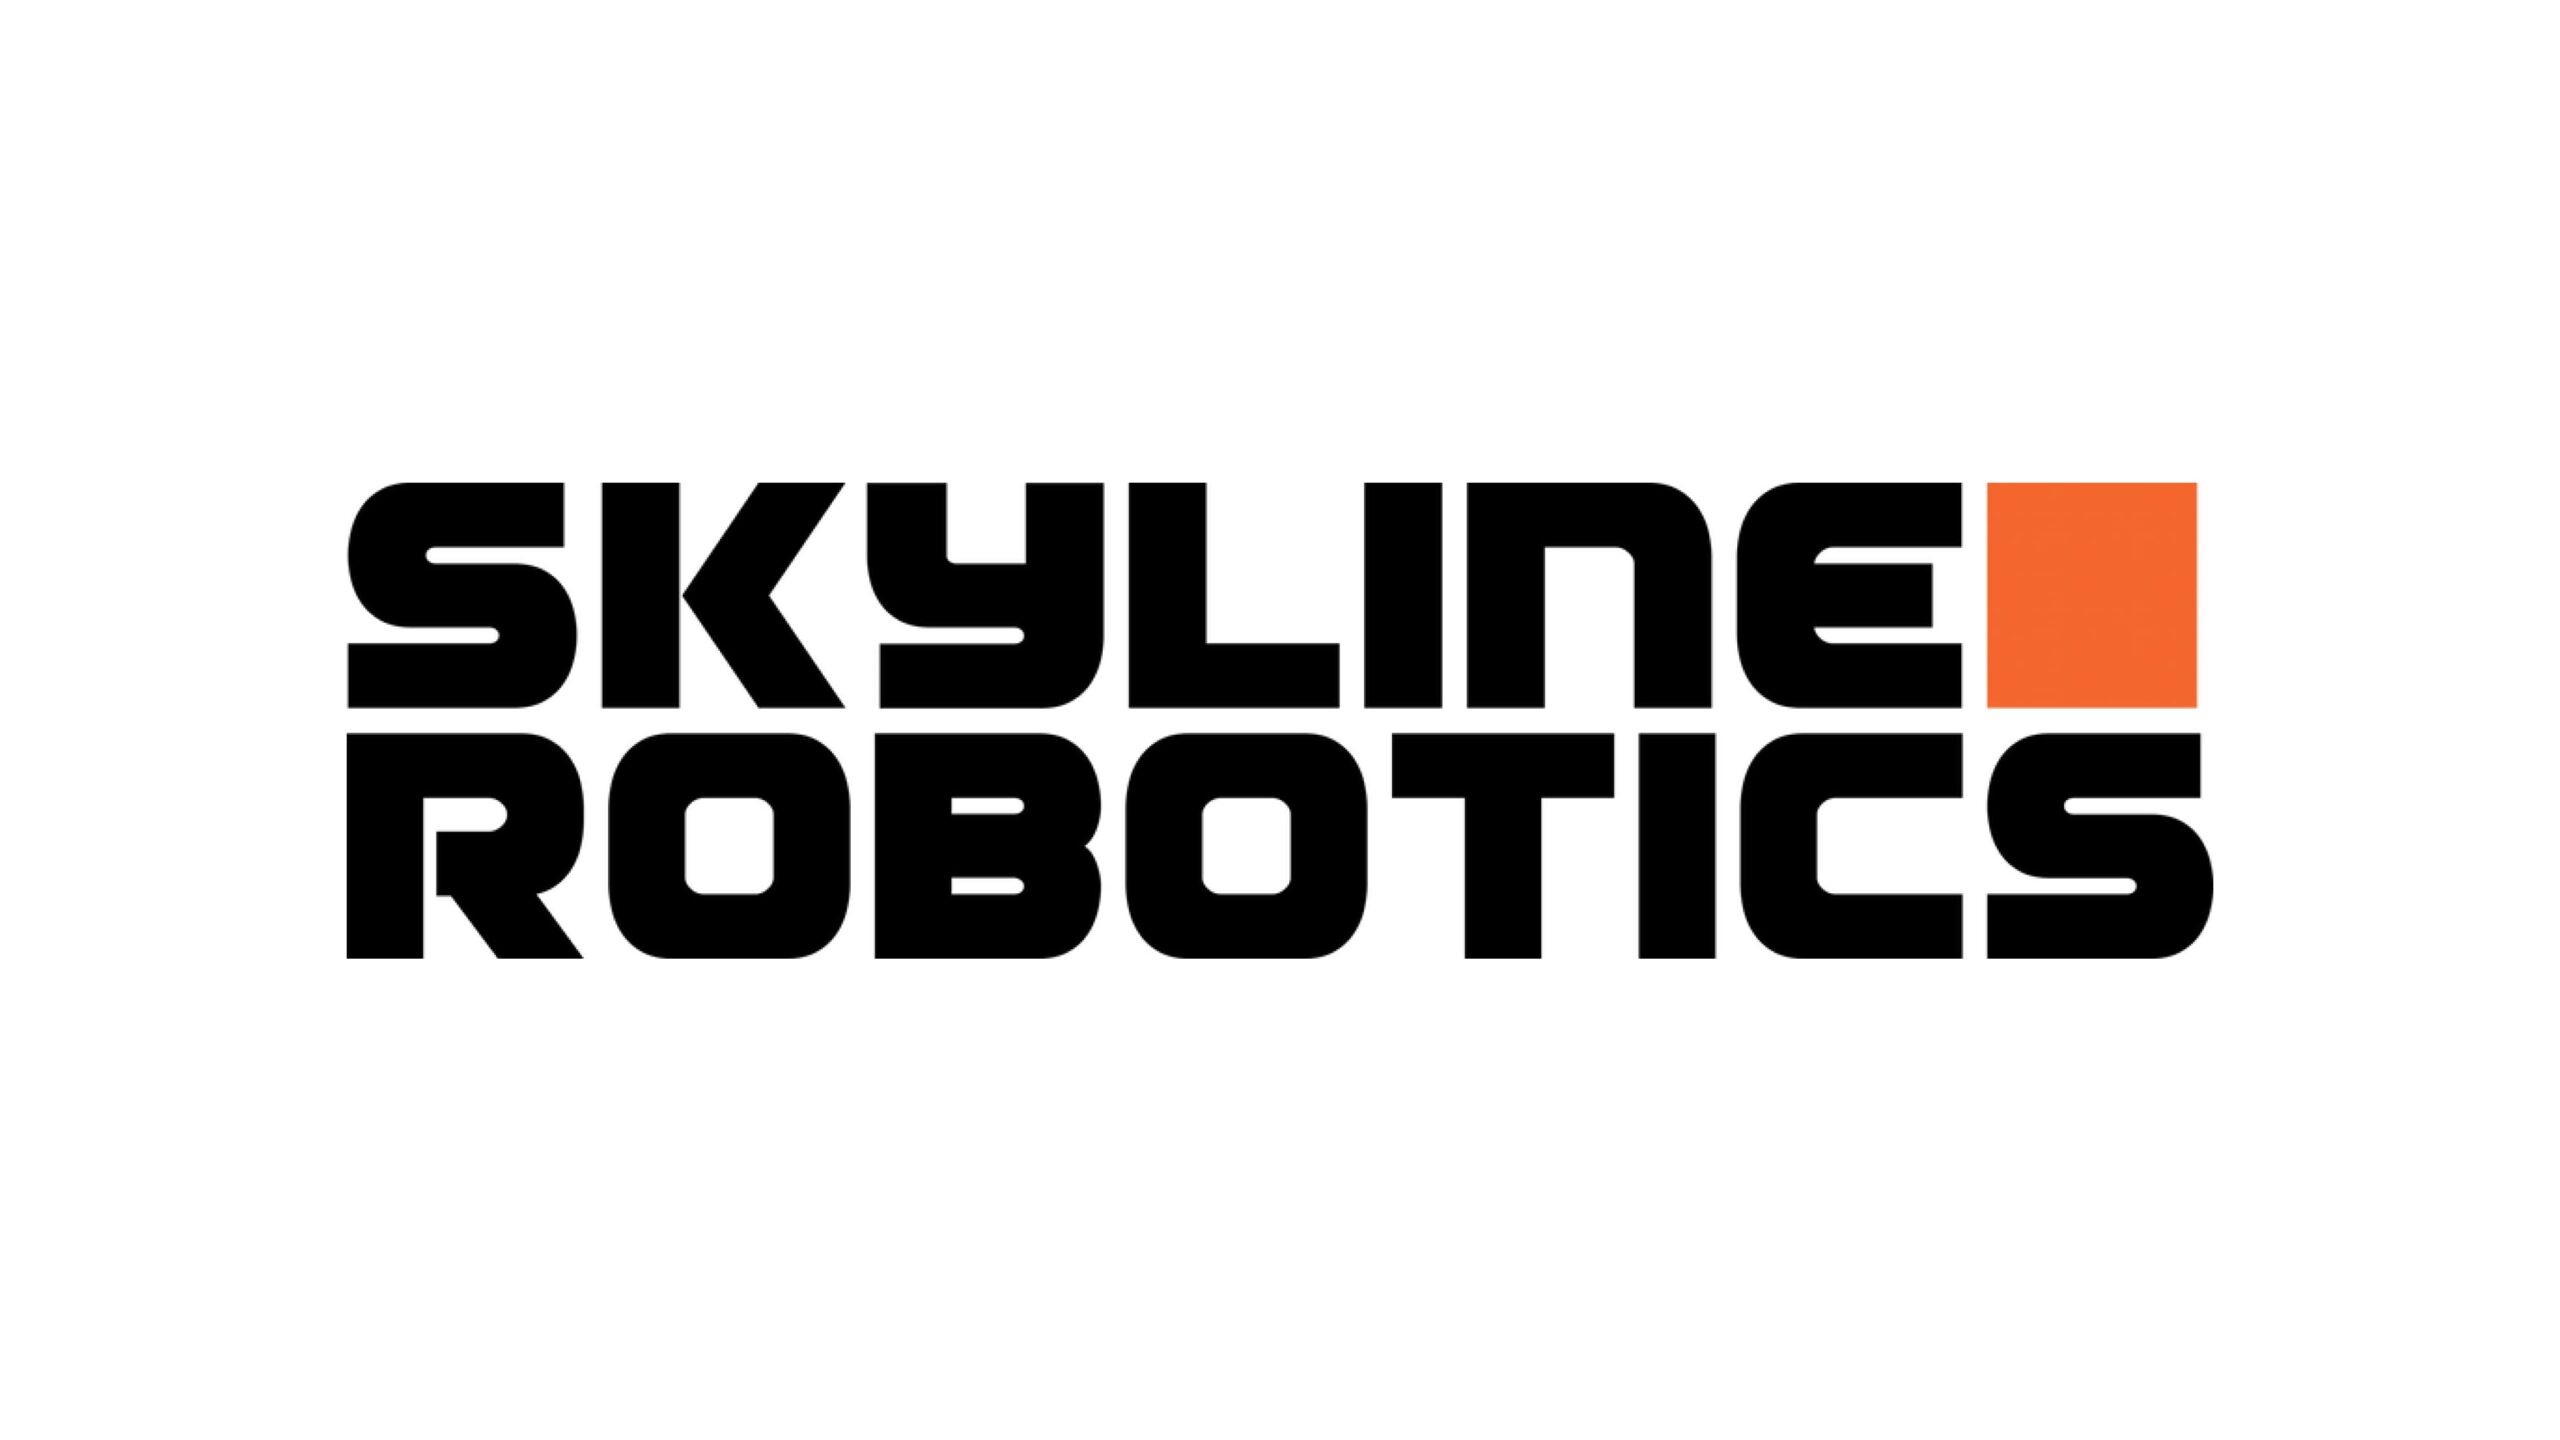 Skylineがロボットを使って超高層ビルの窓を清掃するために335万ドルを調達